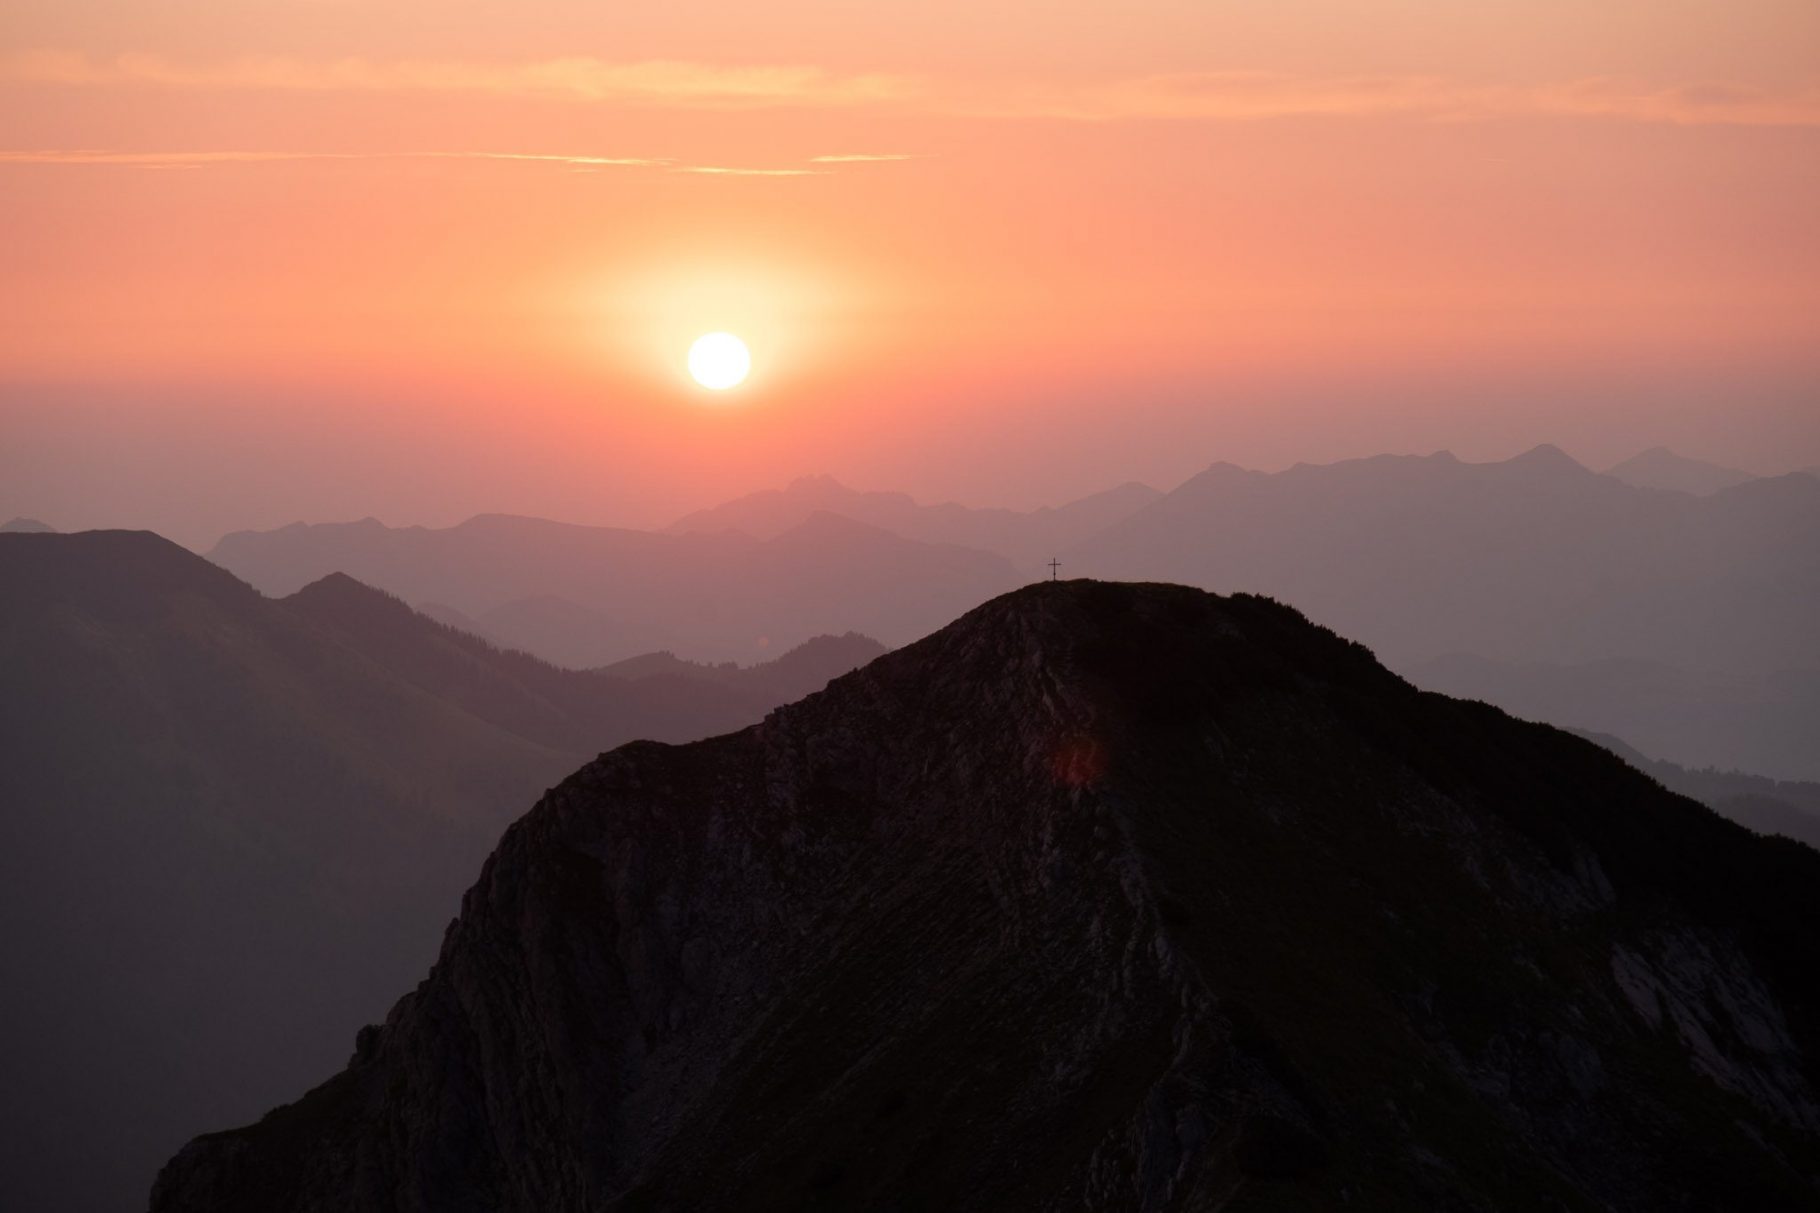 Nicht Deine Zeit? Abends ist nicht Deine Zeit? Wie wäre es dann mit den 8 schönsten Sonnenaufgangswanderungen in Bayern?